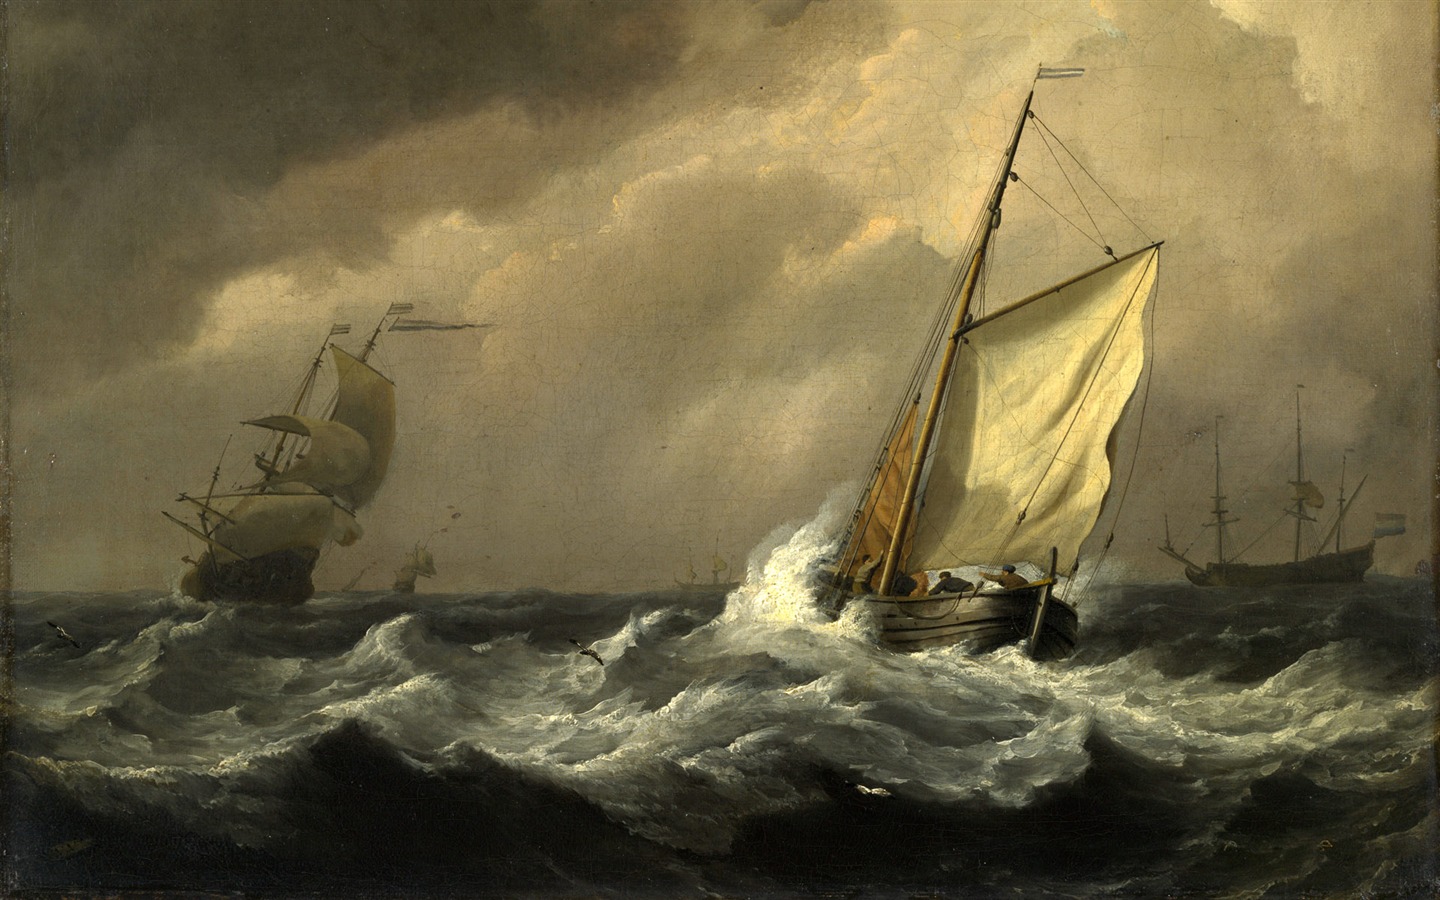 伦敦画廊帆船 壁纸(二)14 - 1440x900